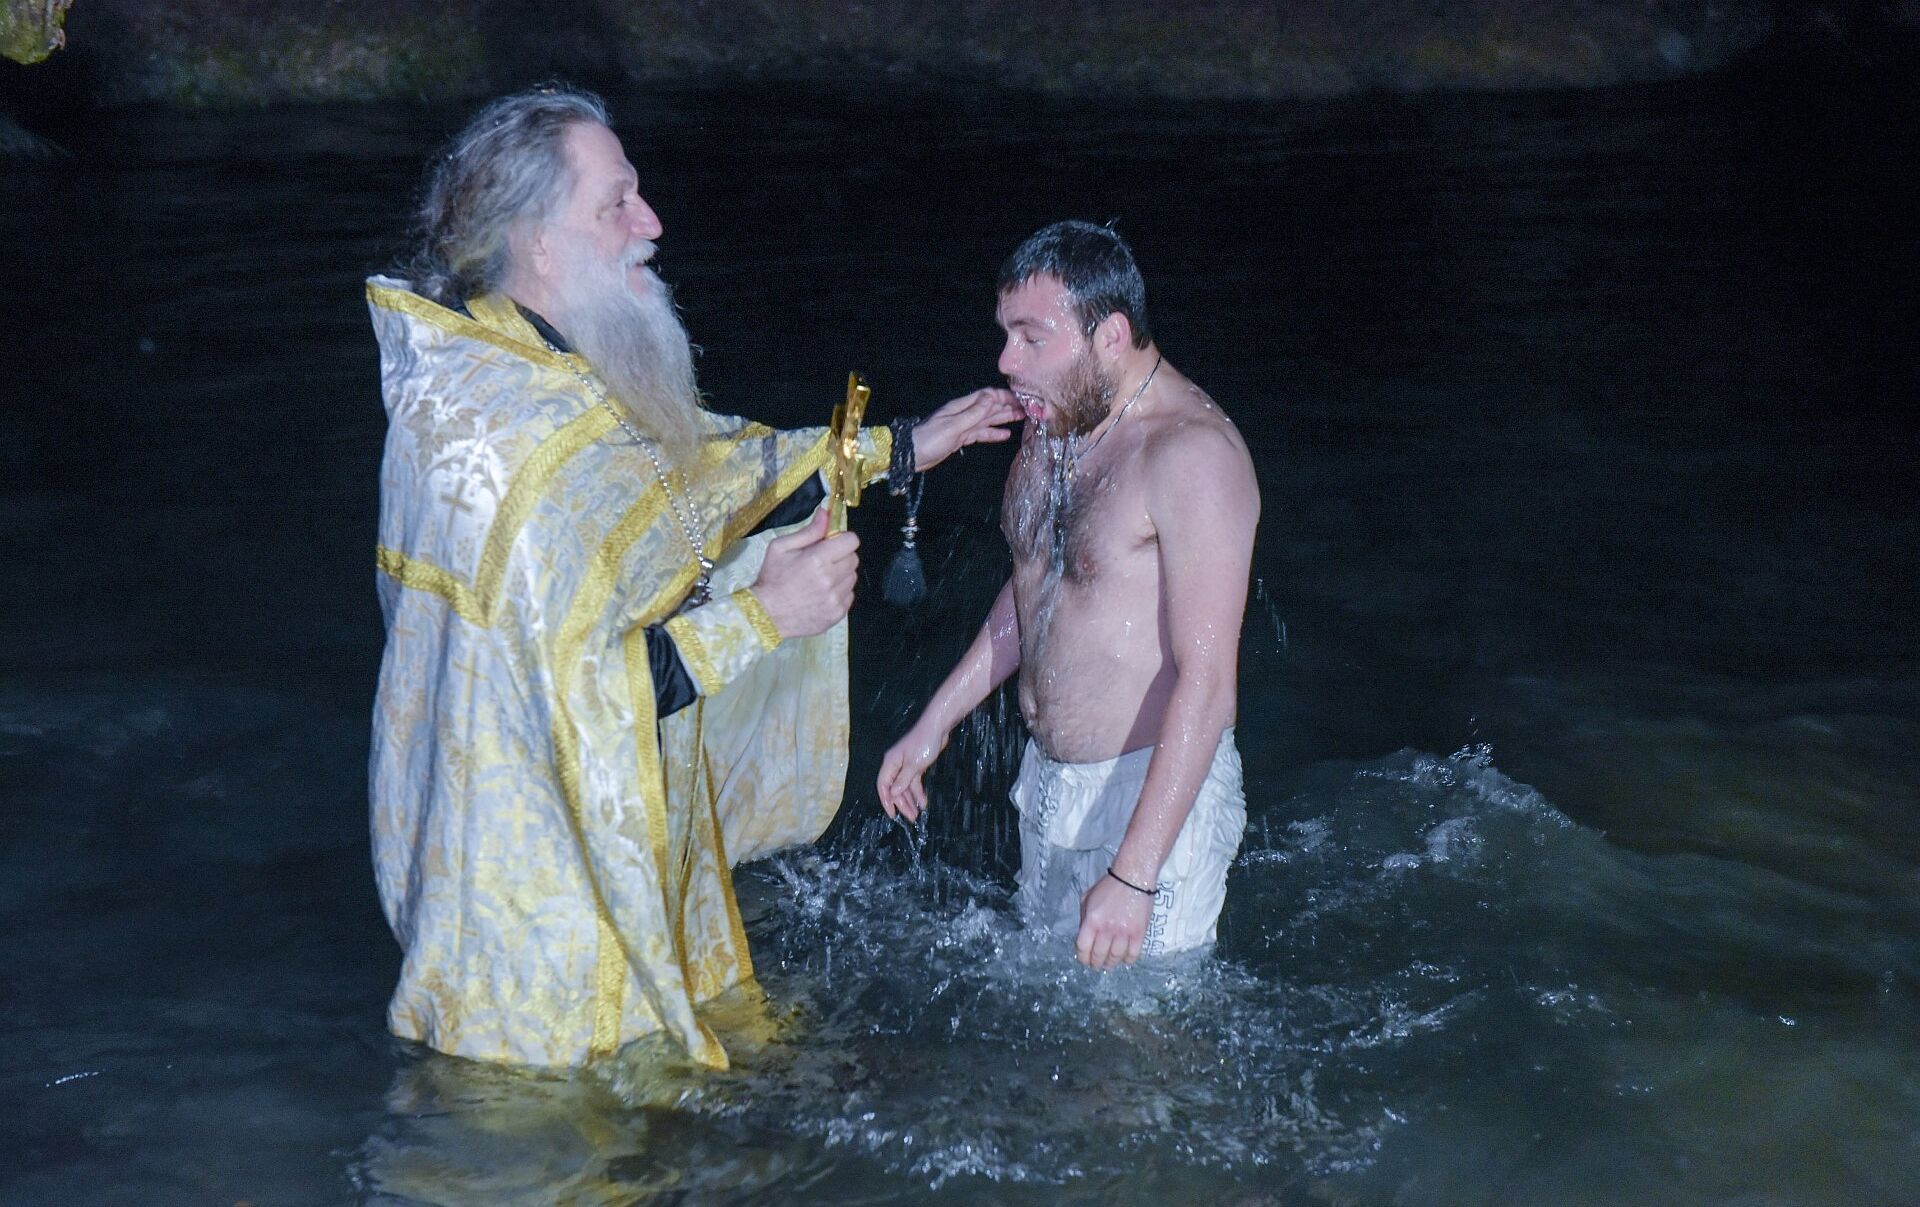 При крещении схватила батюшку за бороду